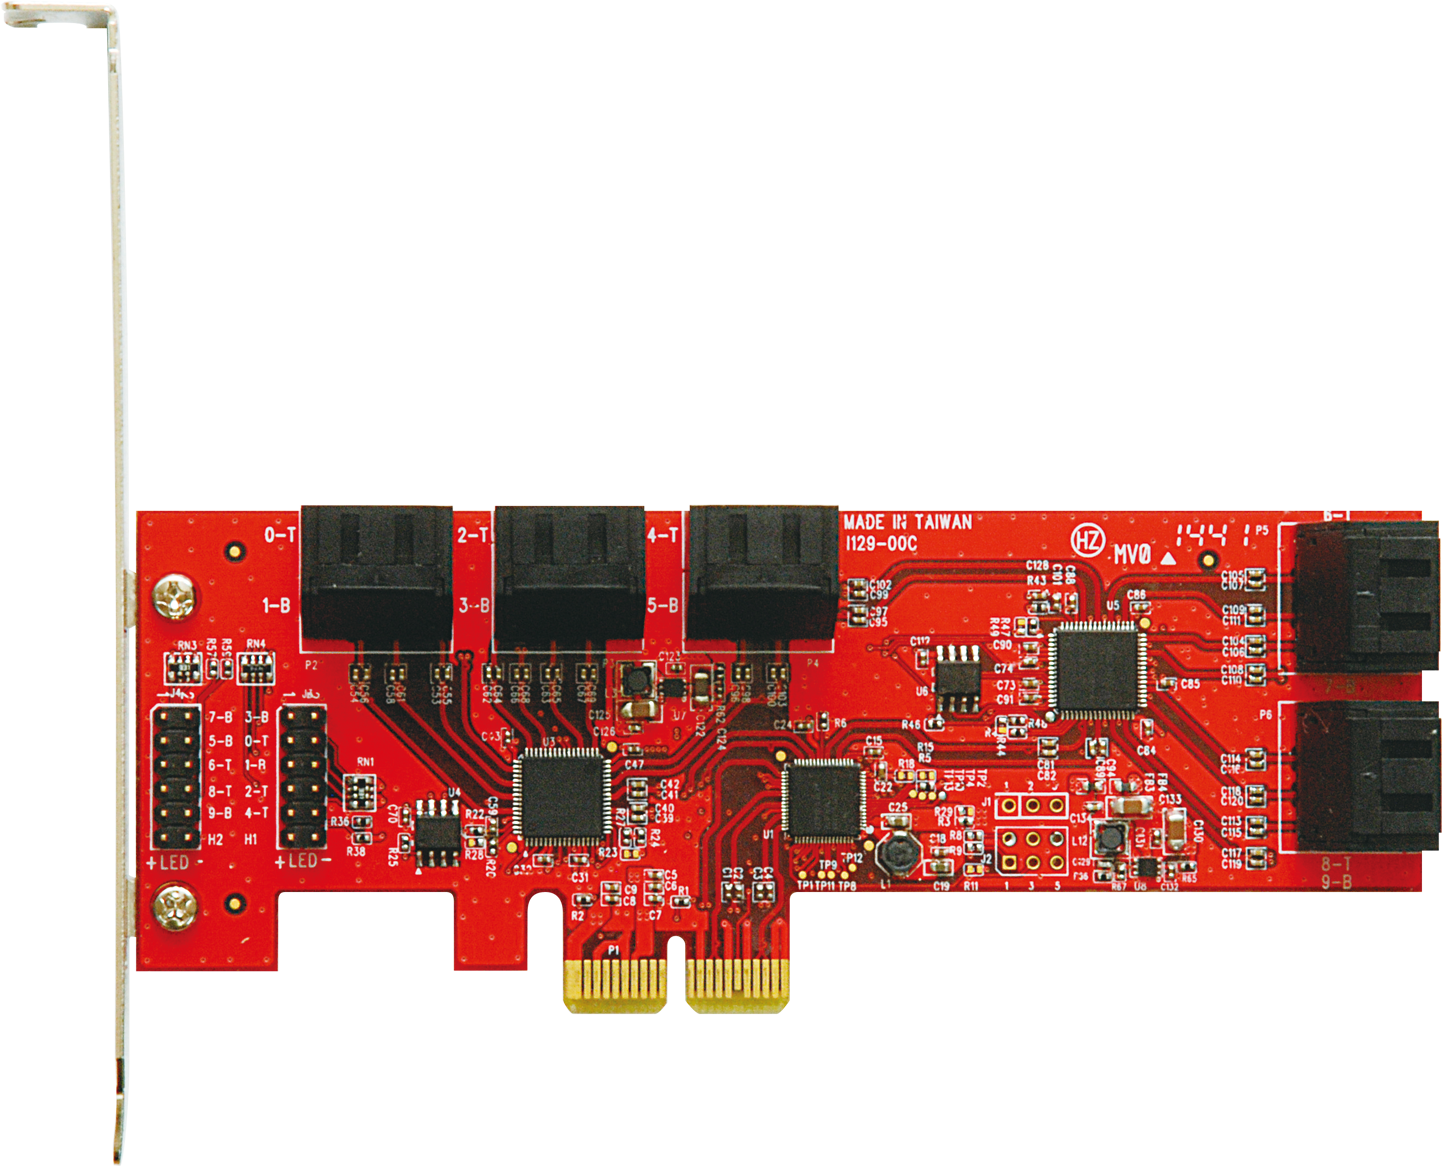 SATA3I10-PCIE | ASMedia社製 ASM1062+JMB575(x2)搭載 SATA3 x10